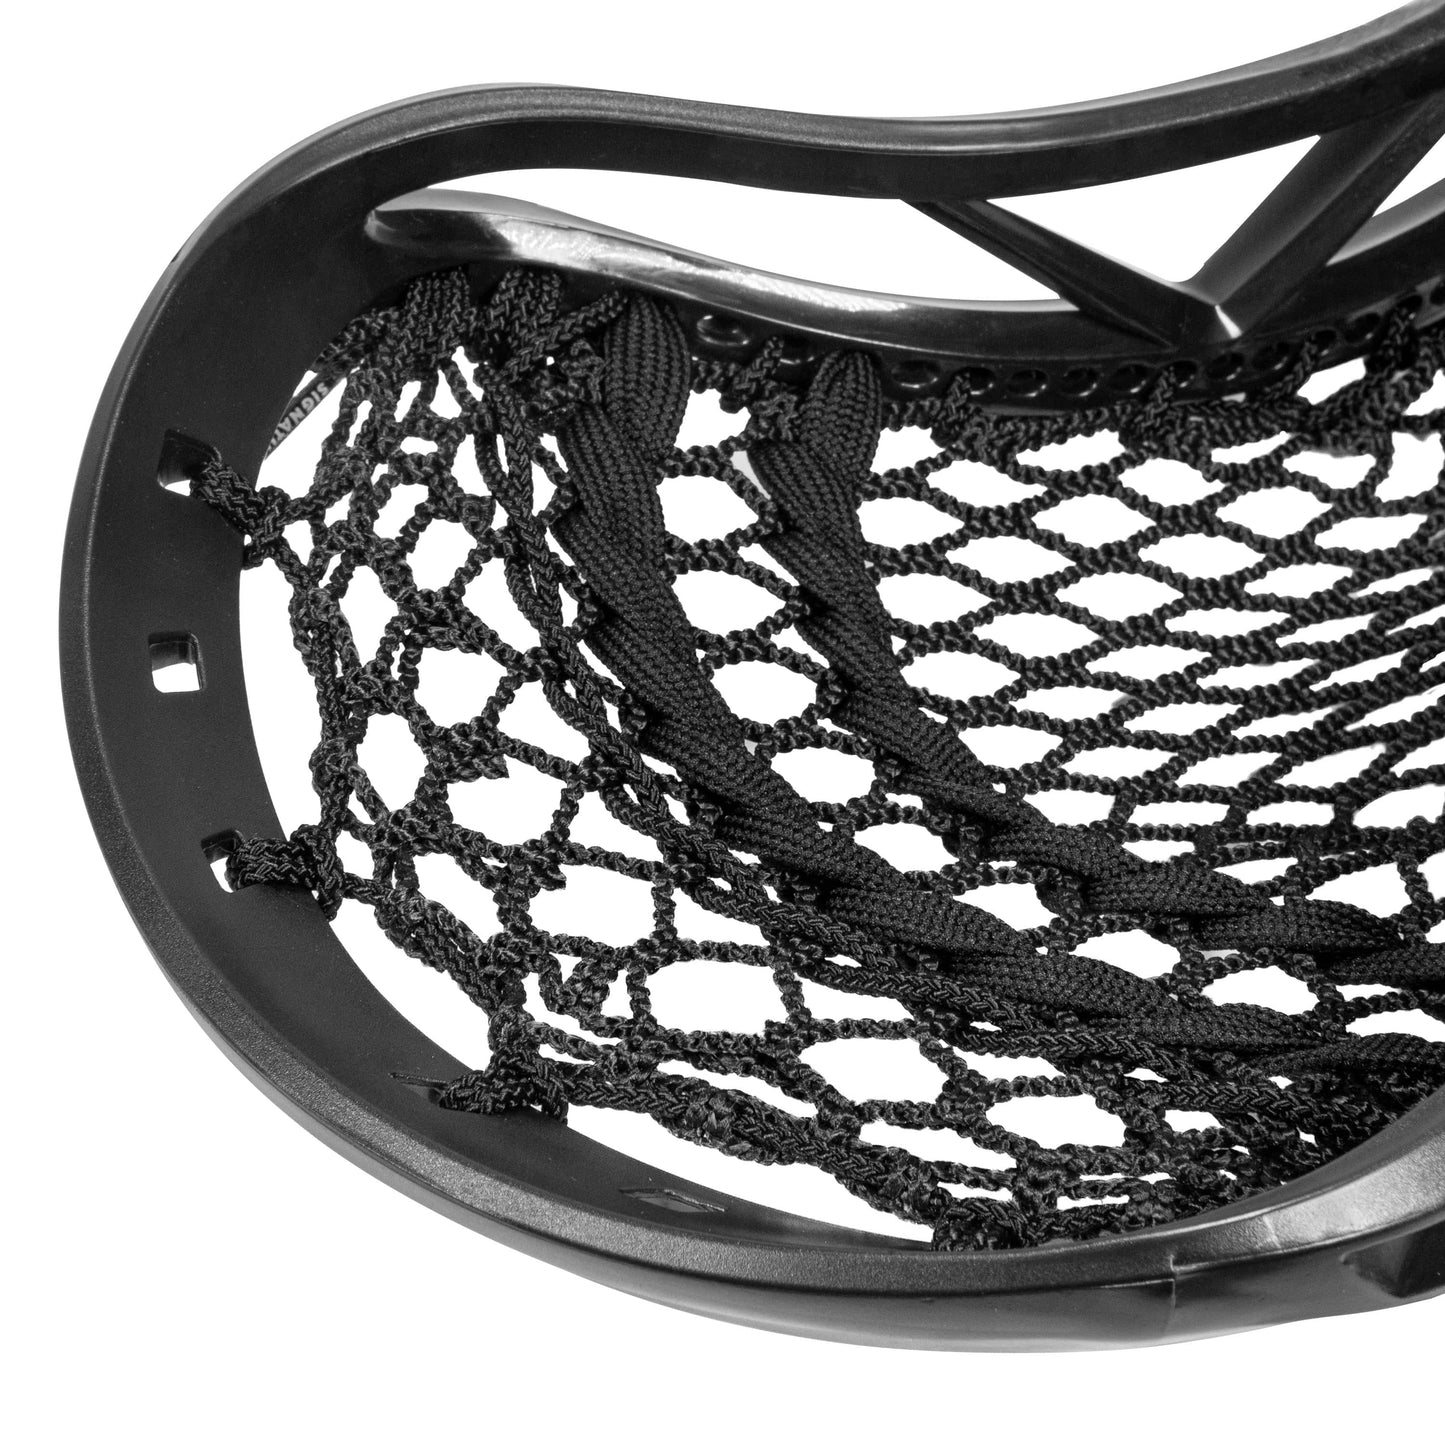 Men's Carbon Offensive Pro Complete Stick | 30" | Black Signature Lacrosse